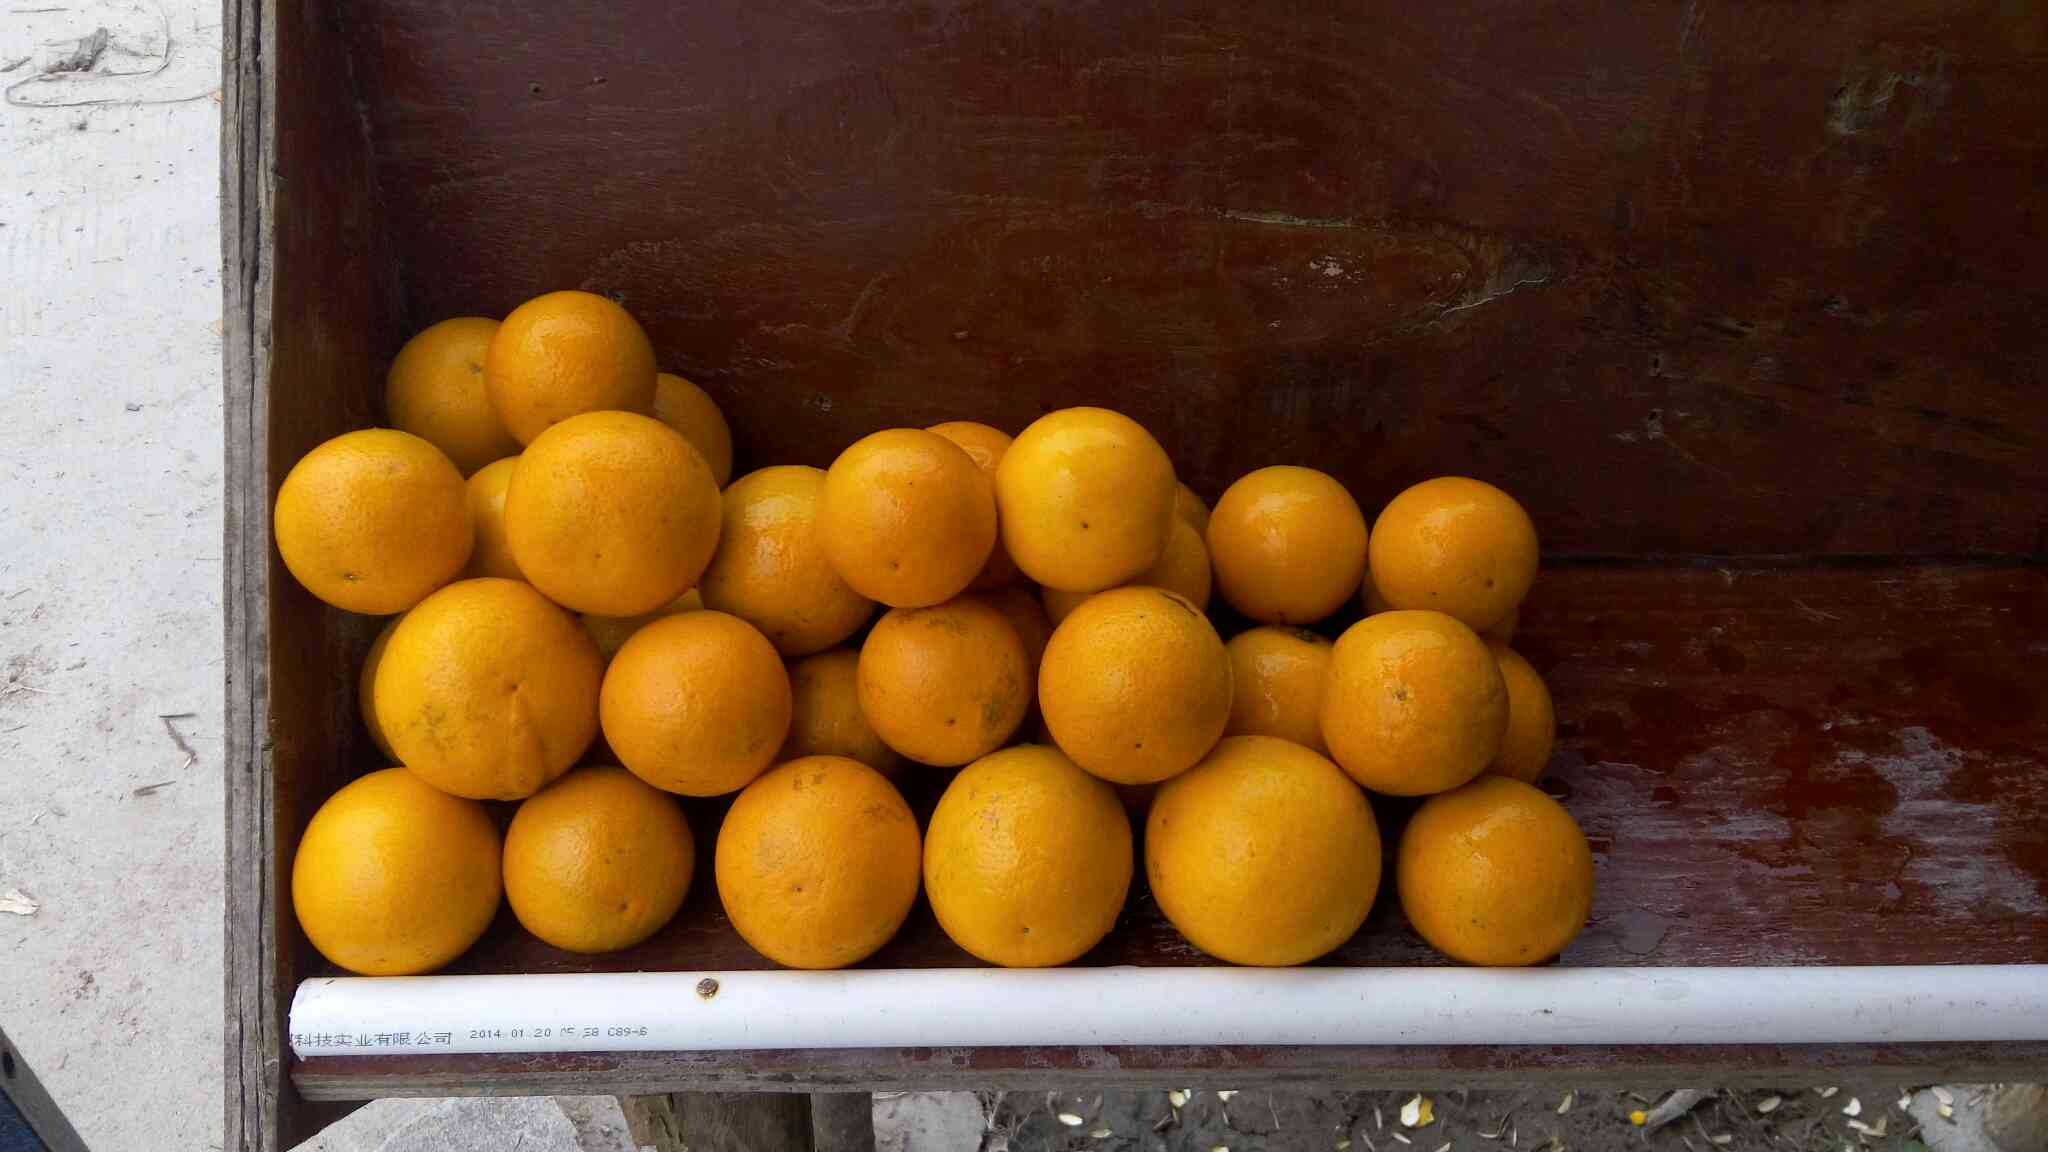 【橙子批发】脐橙价格0元\/斤 1斤起批